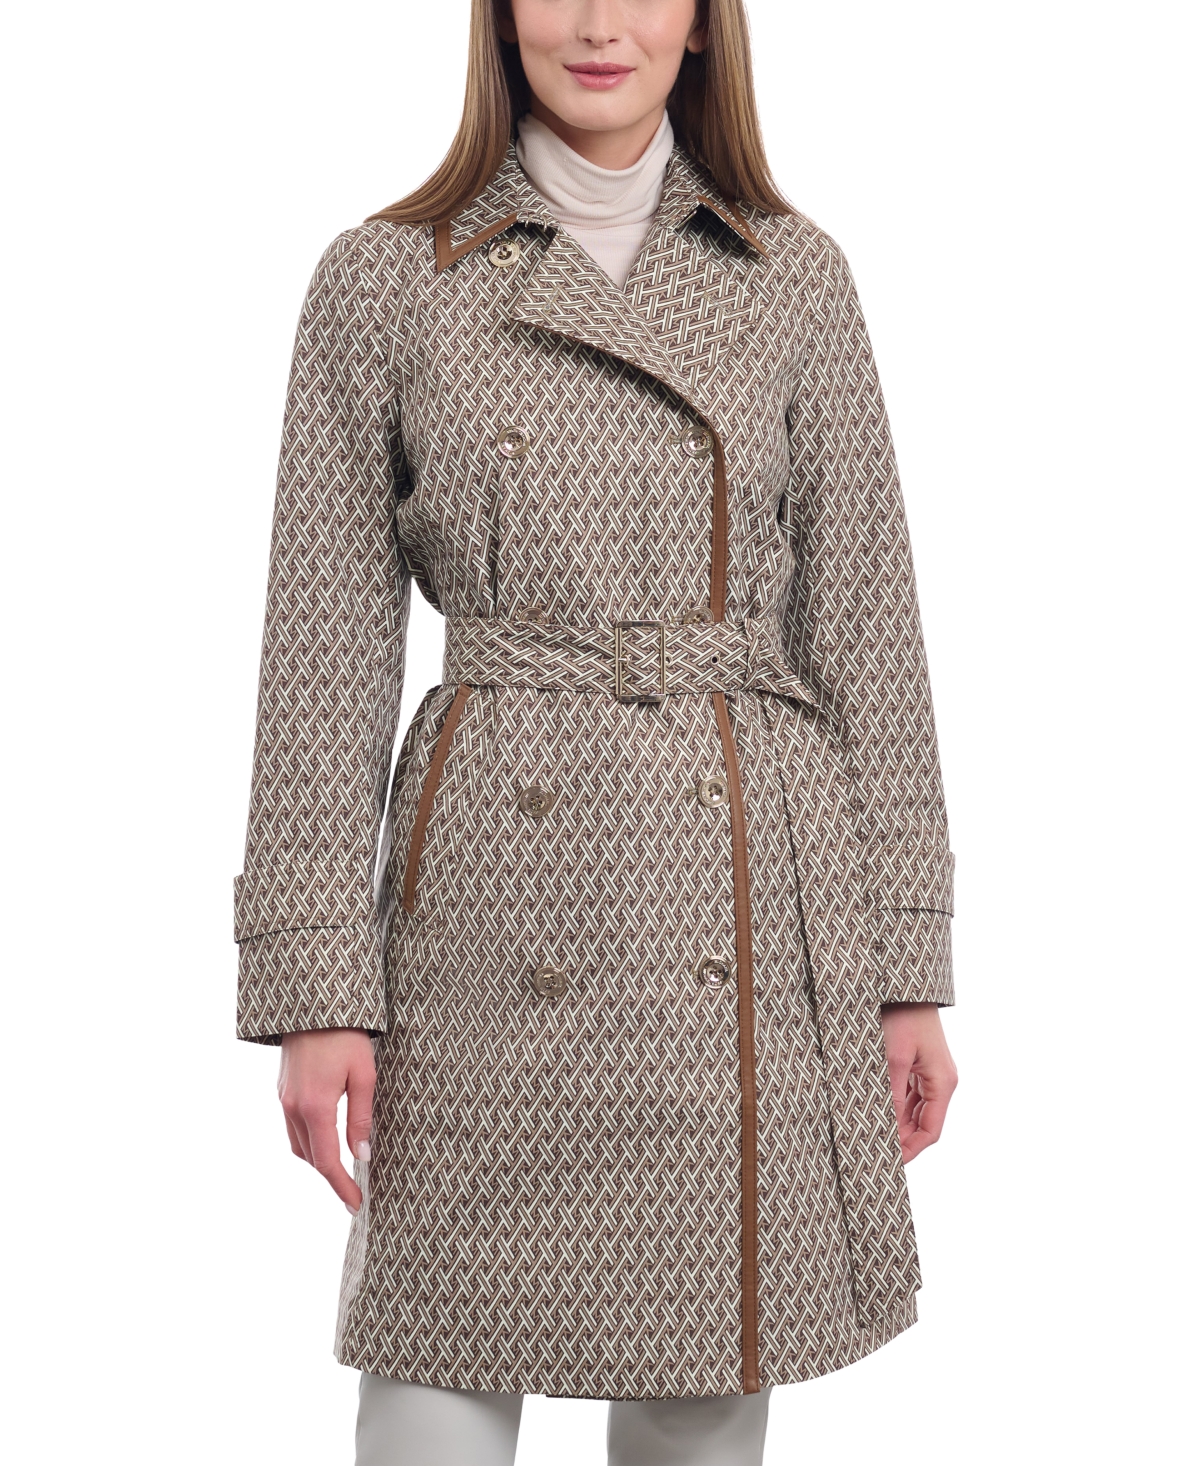 Shop Louis Vuitton Women's Trench Coats